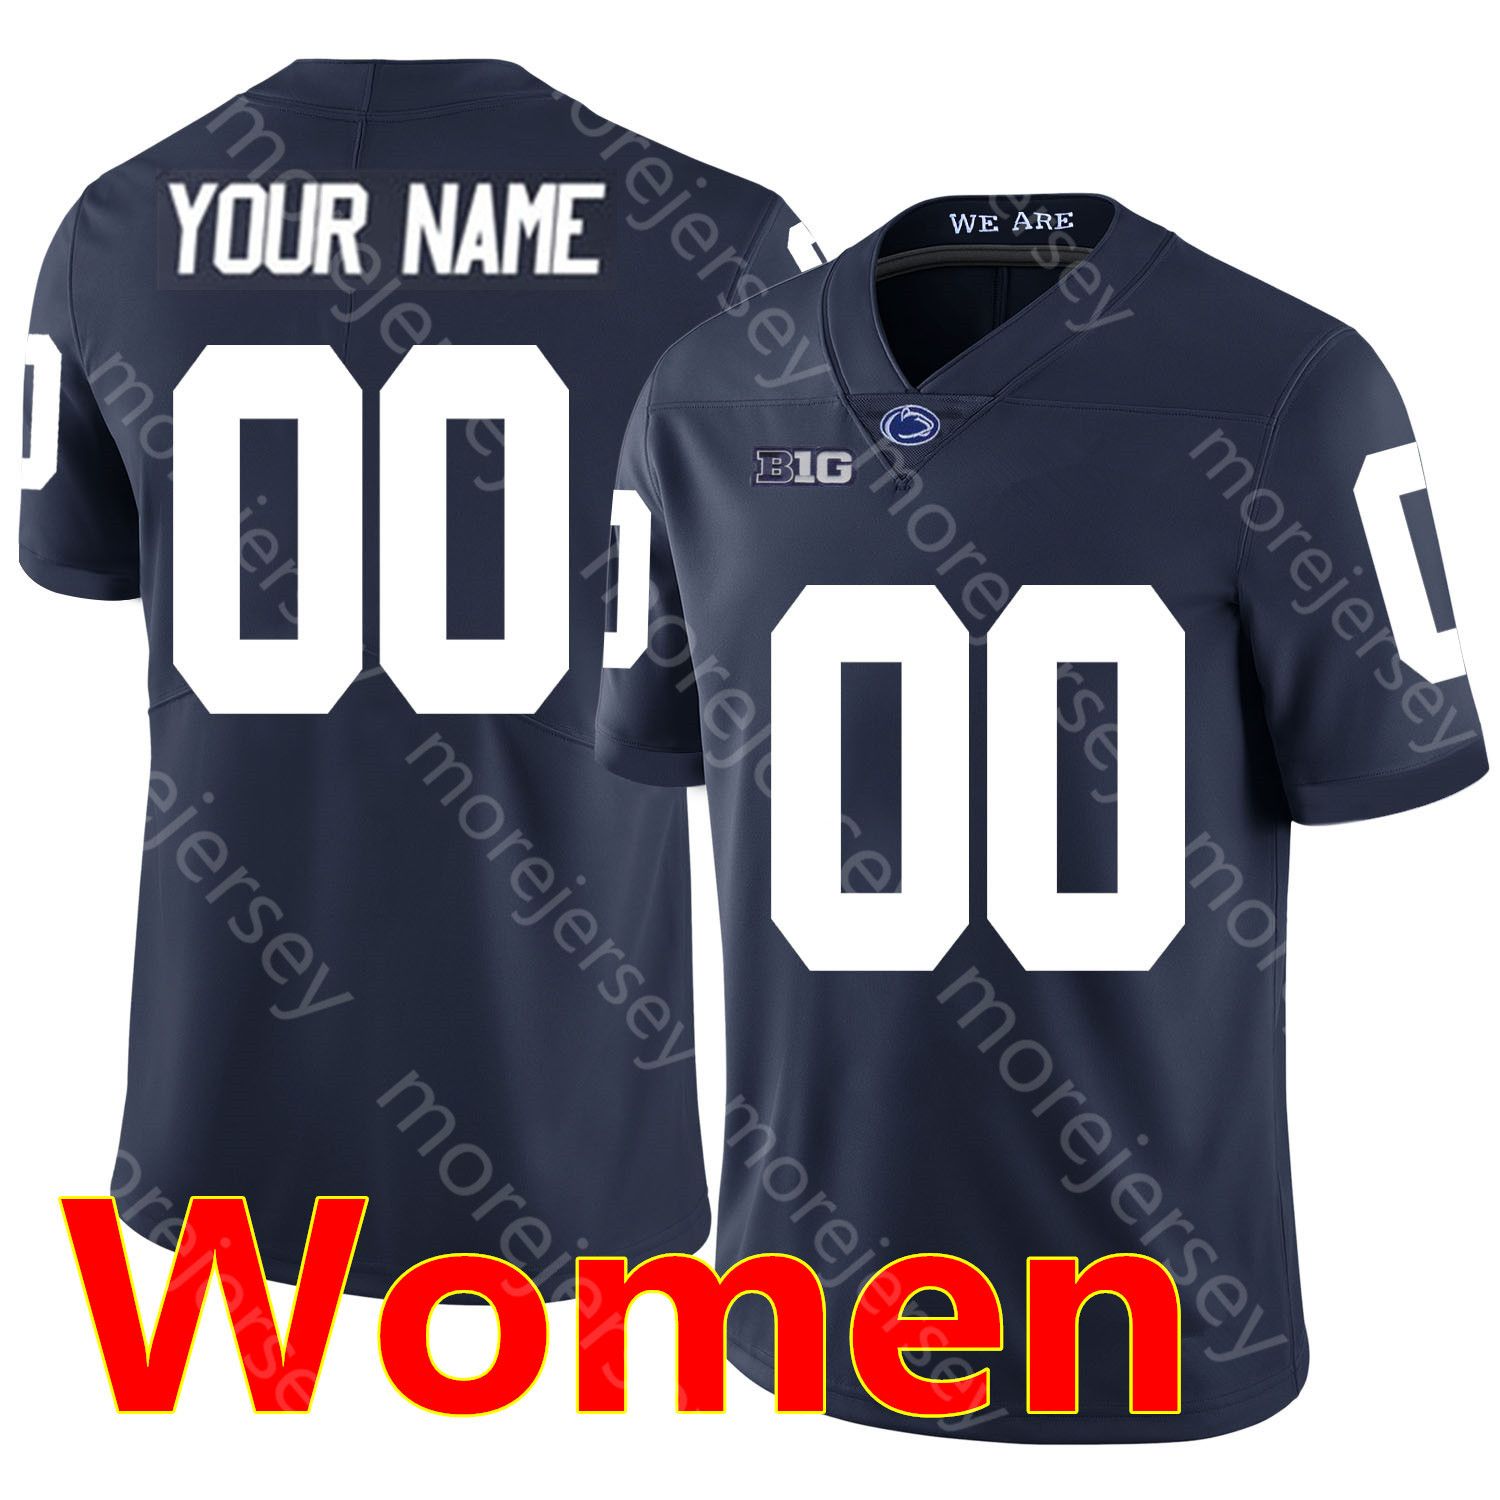 Vrouwen marine met naam